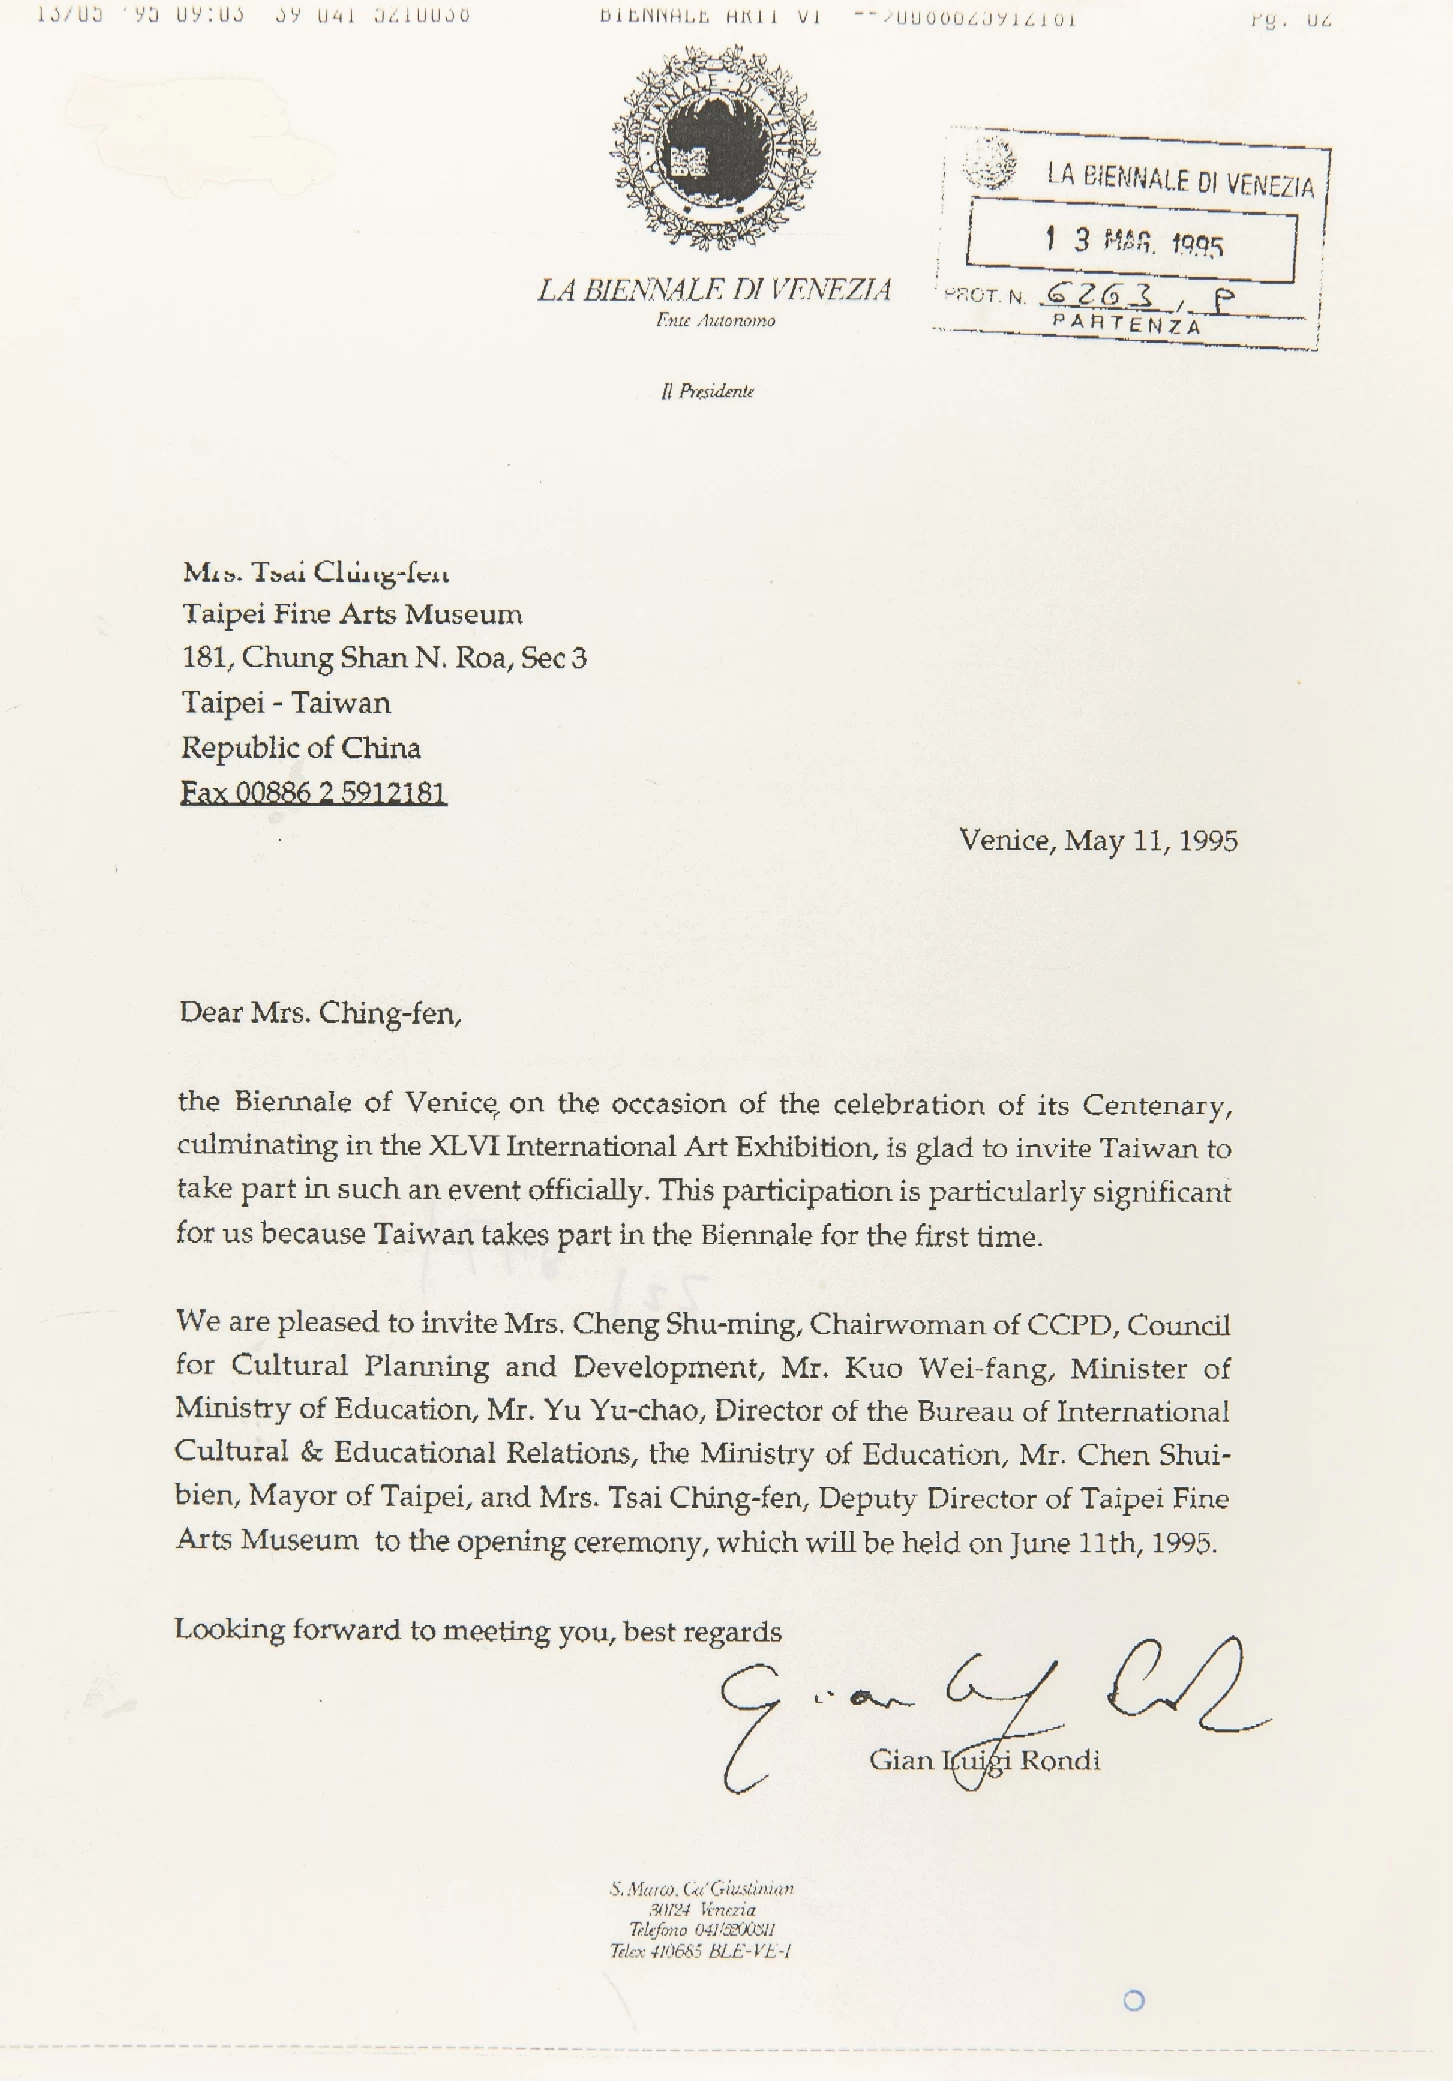 威尼斯雙年展主辦大會邀請函，邀請北美館以台灣館名義參加1995年第46屆威尼斯雙年展，1995.05.11-圖片